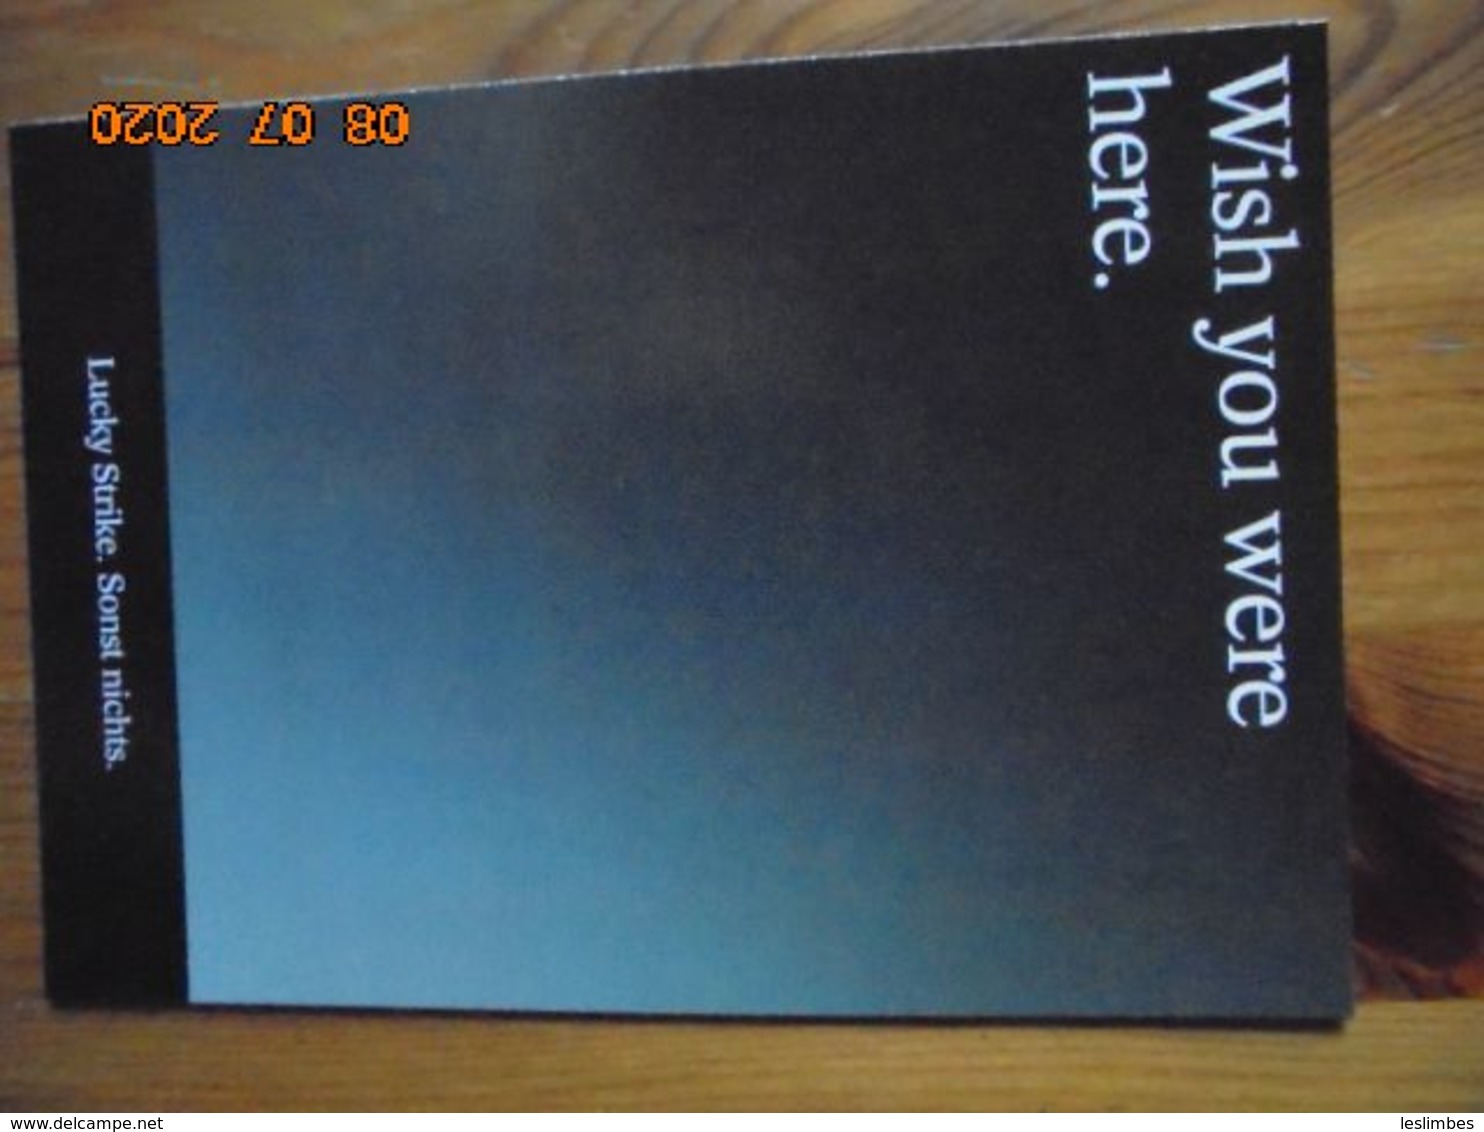 Carte Postale Publicitaire Allemand (Taschen 1996) 16,3 X 11,4 Cm. Lucky Strike. Sonst Nichts. "Wish You Were Here" 1994 - Objets Publicitaires